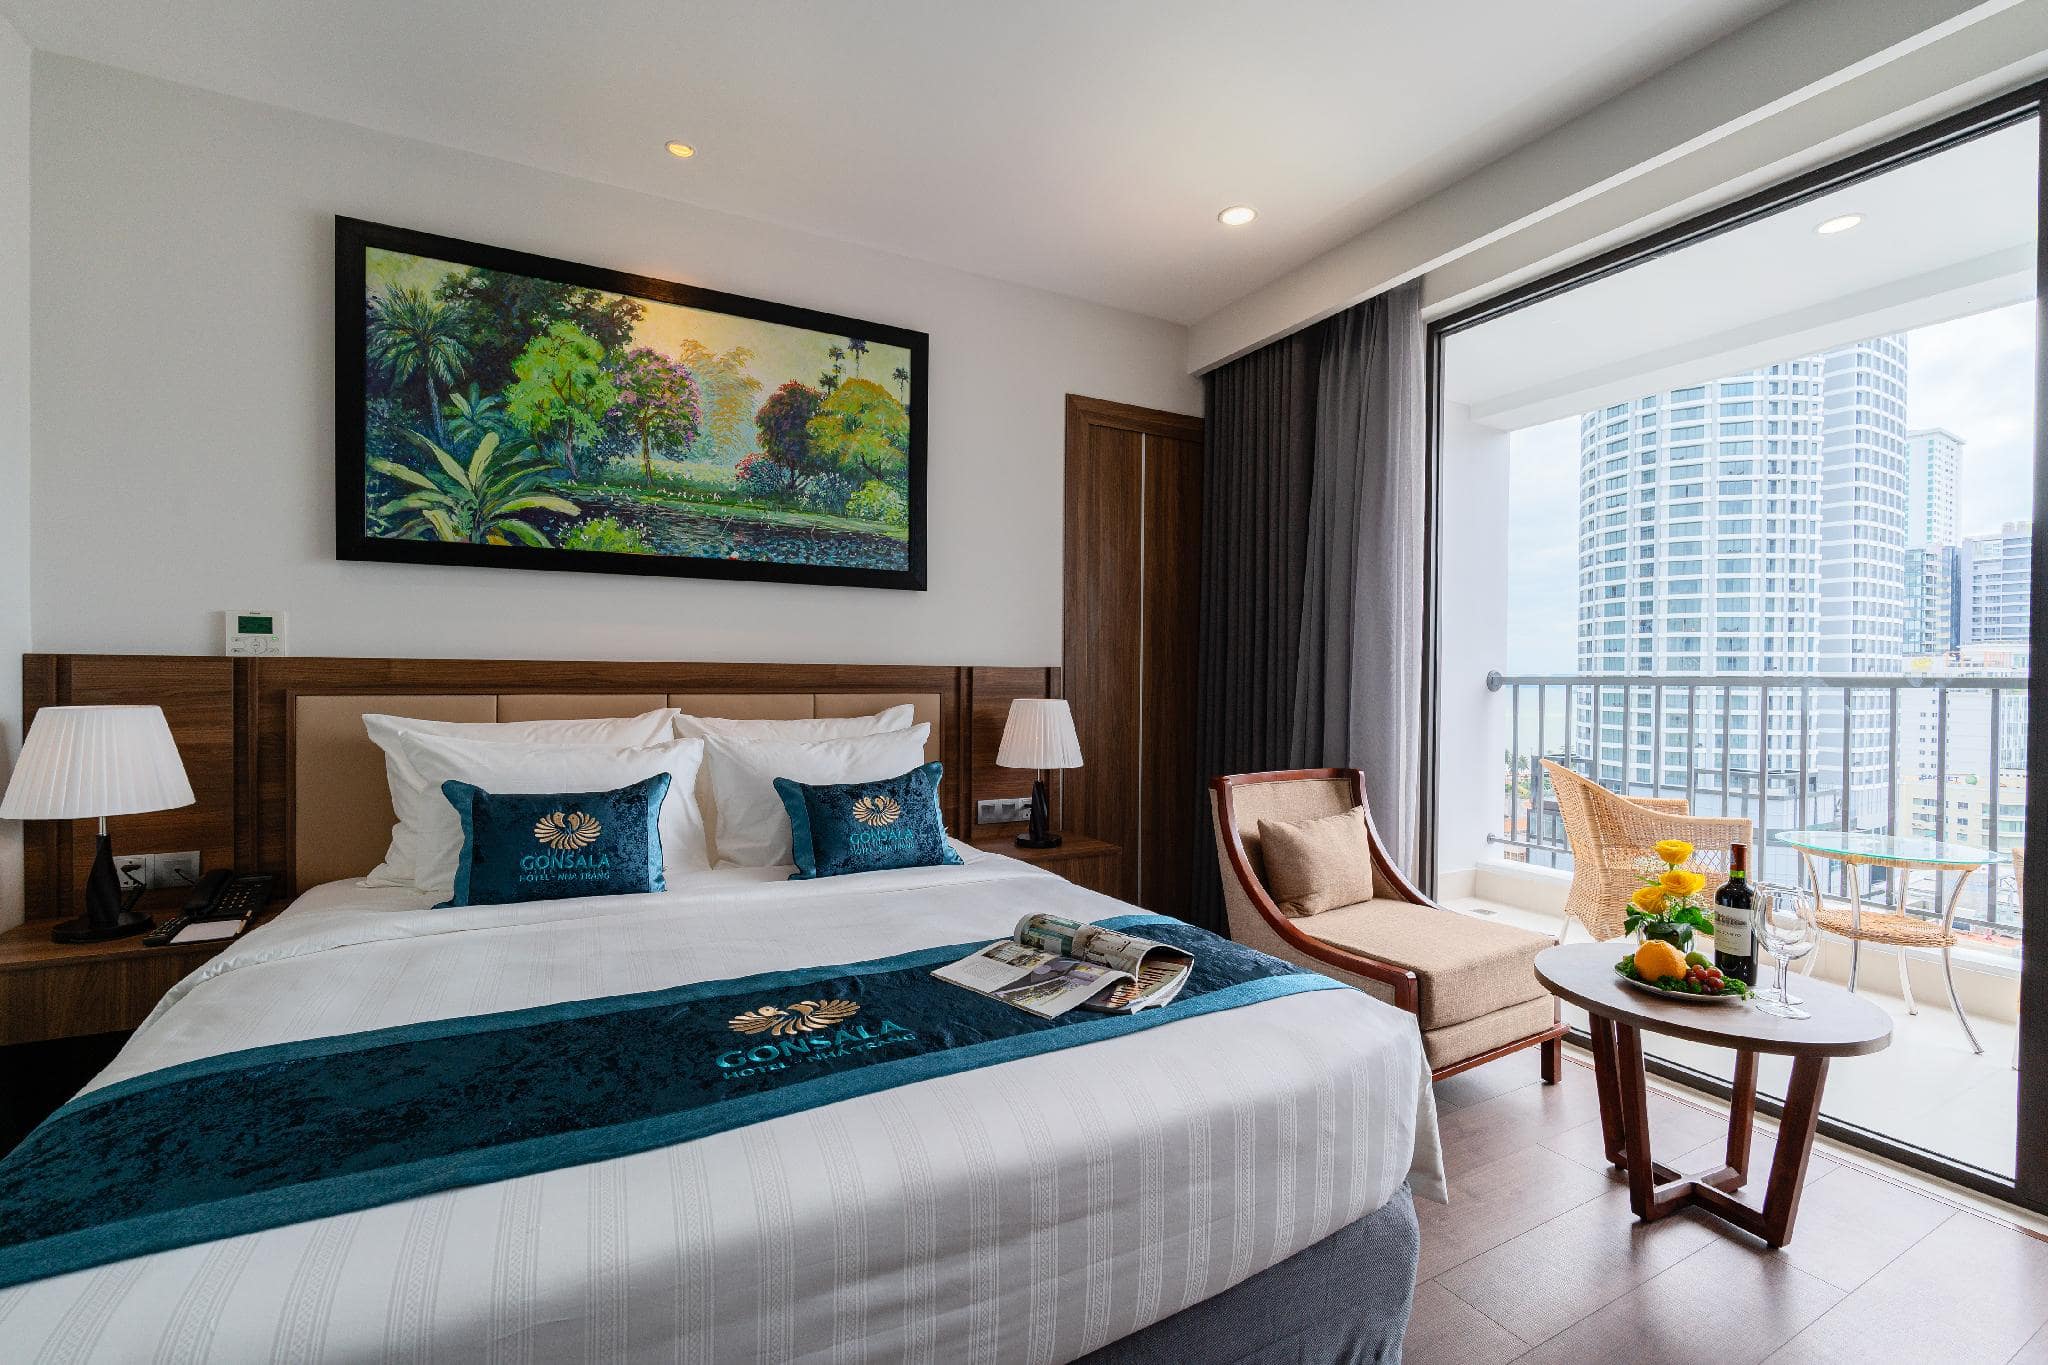 khách sạn nha trang 4 sao gần biển - Gonsala Hotel Nha Trang